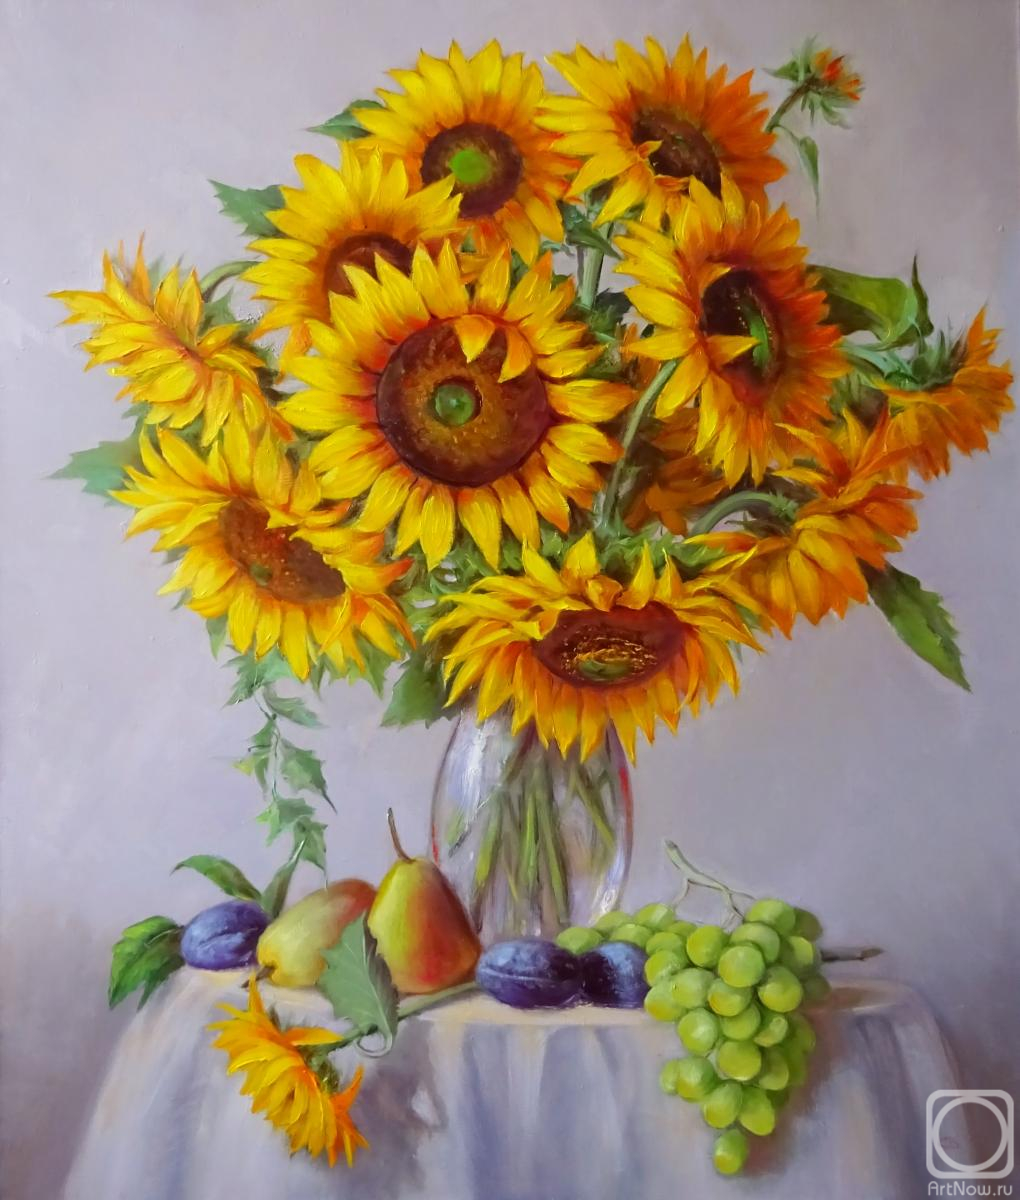 Razumova Svetlana. Sunflowers in a vase